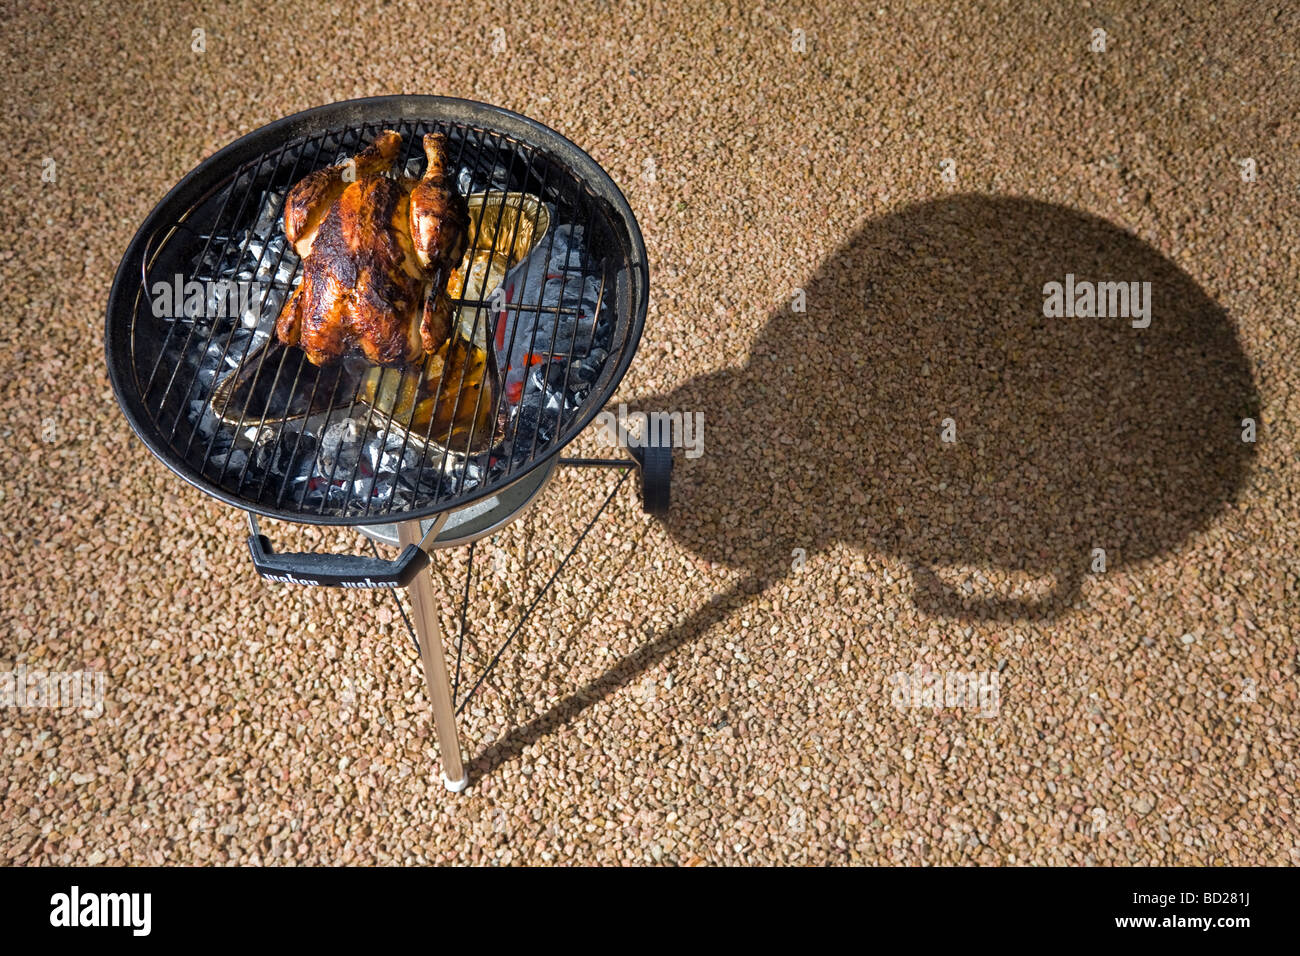 La cottura di un pollo ruspante grazie a un barbecue. Cuisson d onu poulet fermier dans un barbecue à couvercle. Foto Stock